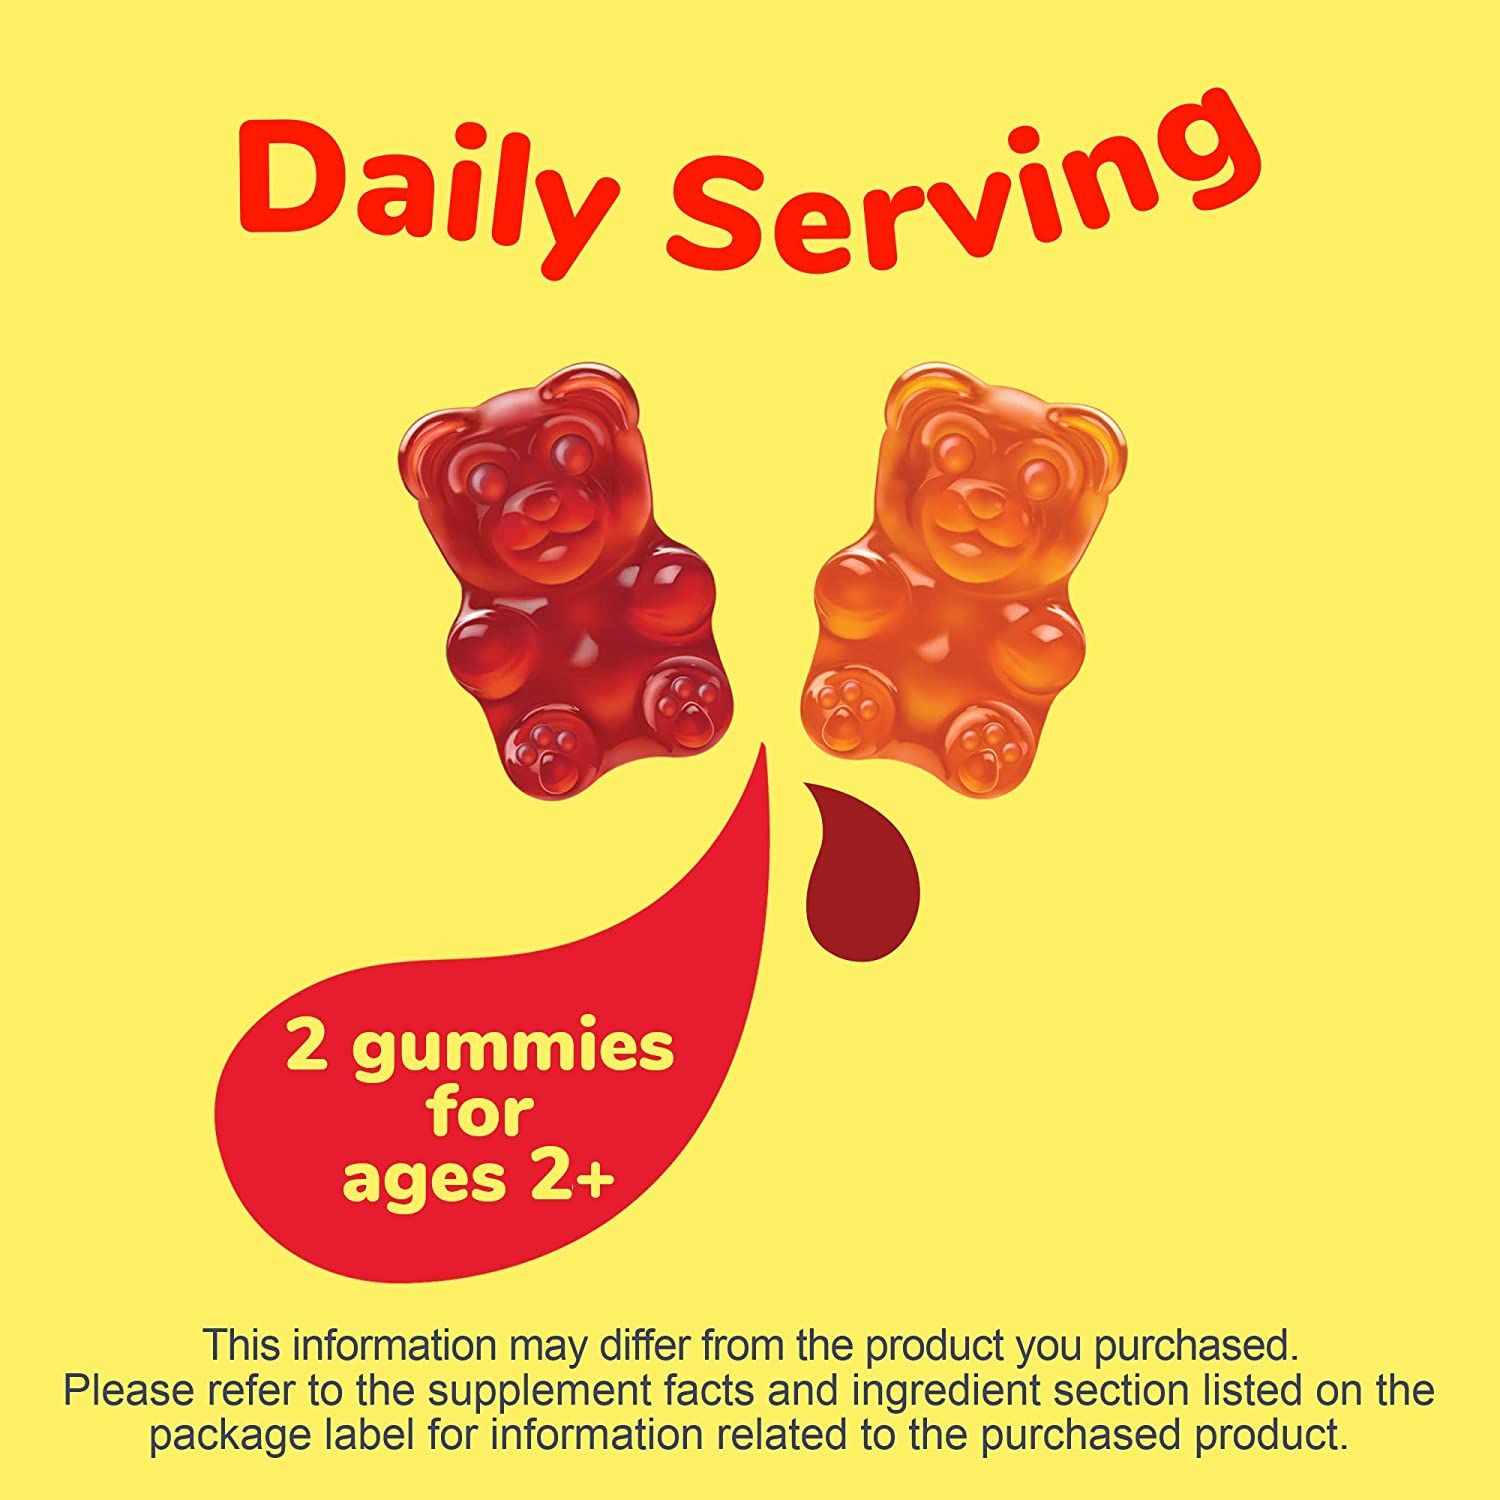 L'il Critters Probiotic Supplement Gummies, Fruit flavors - 60 ct